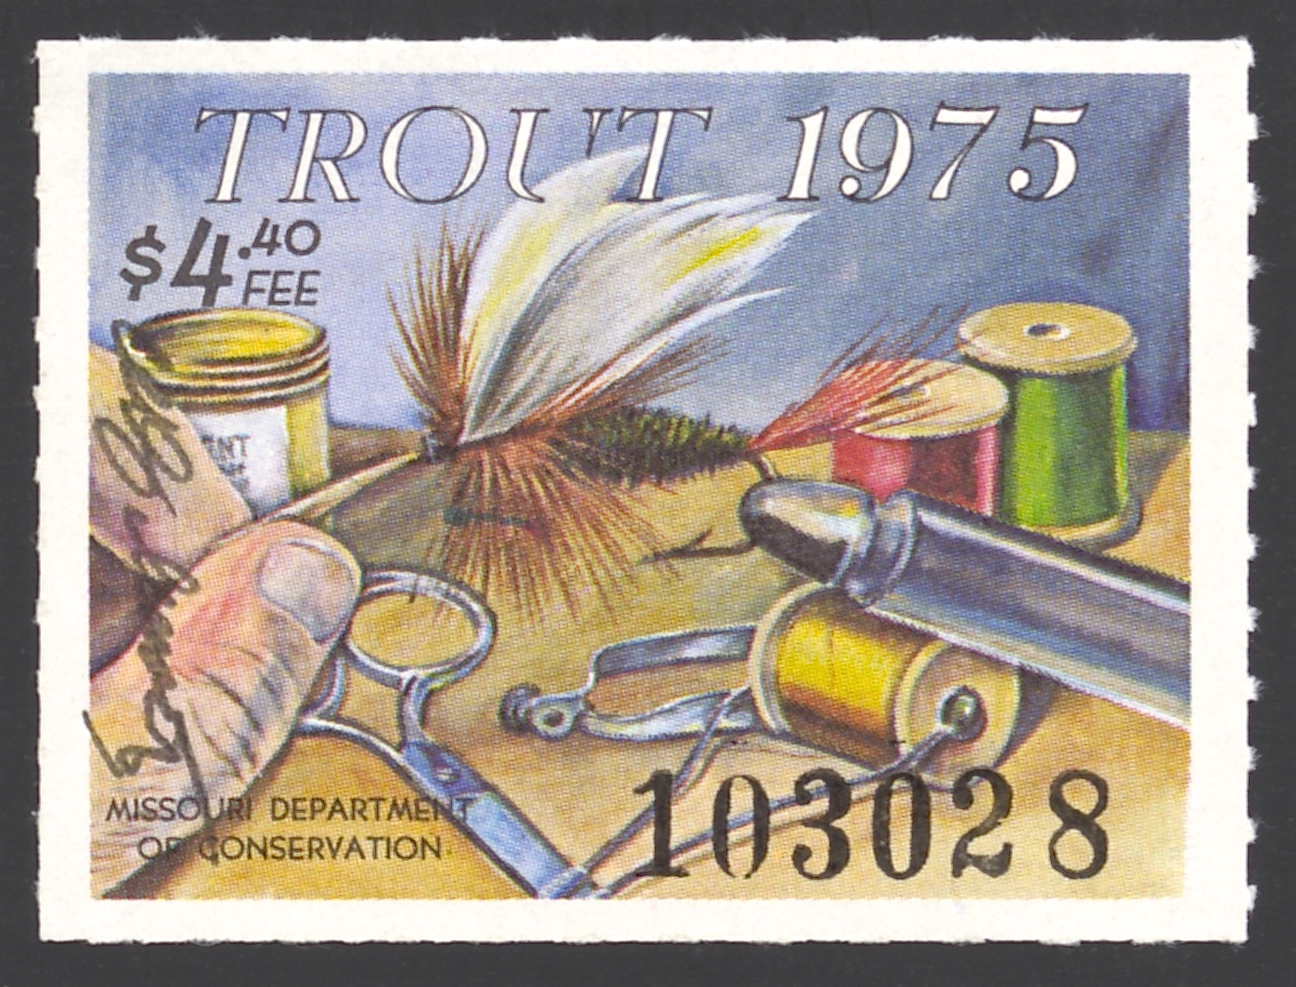 1975 Missouri Missouri Trout Stamp signed by Charles Schwartz